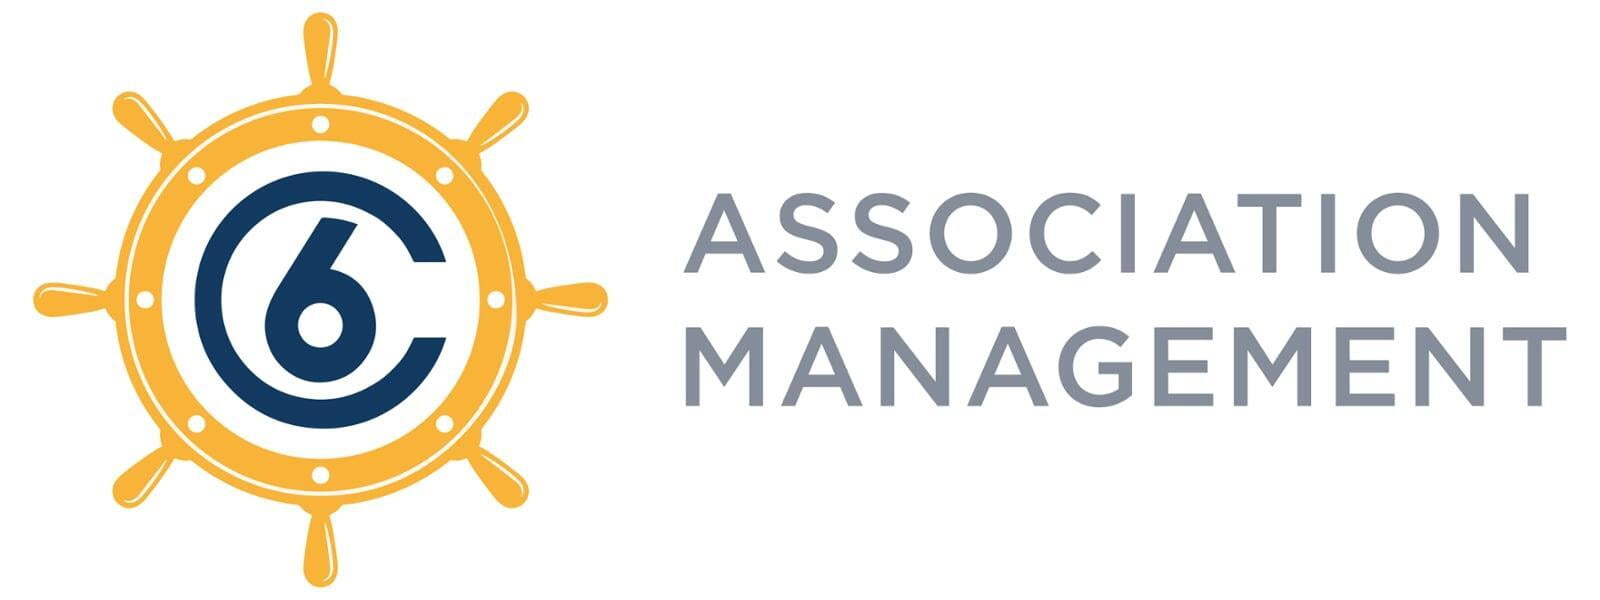 C6 Association Management